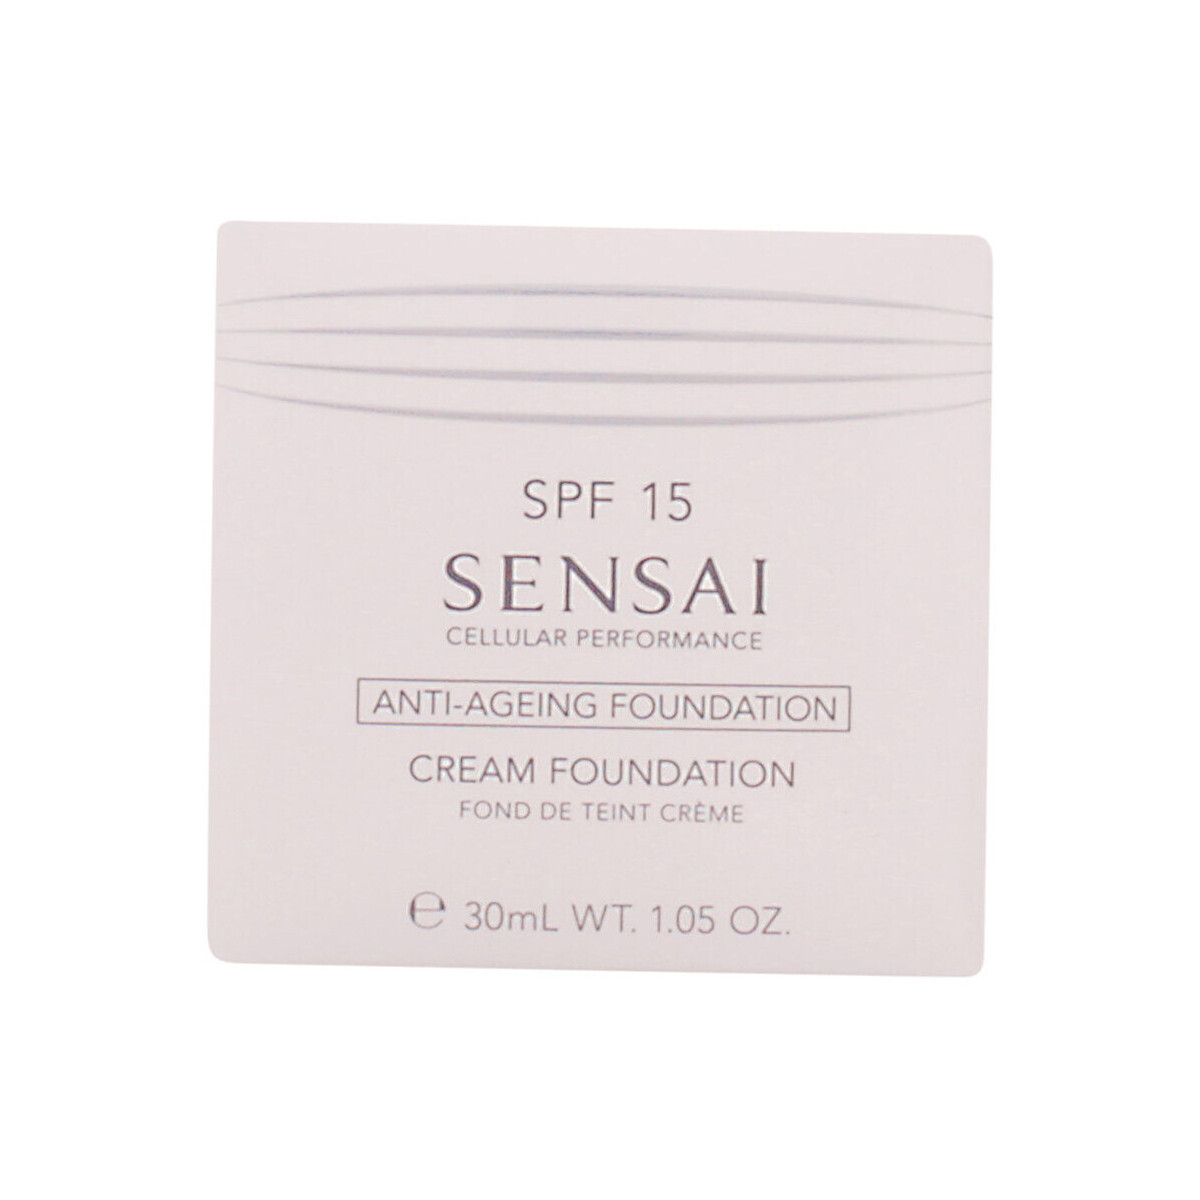 Belleza Base de maquillaje Sensai Cp Cream Foundation Spf15 cf-22 